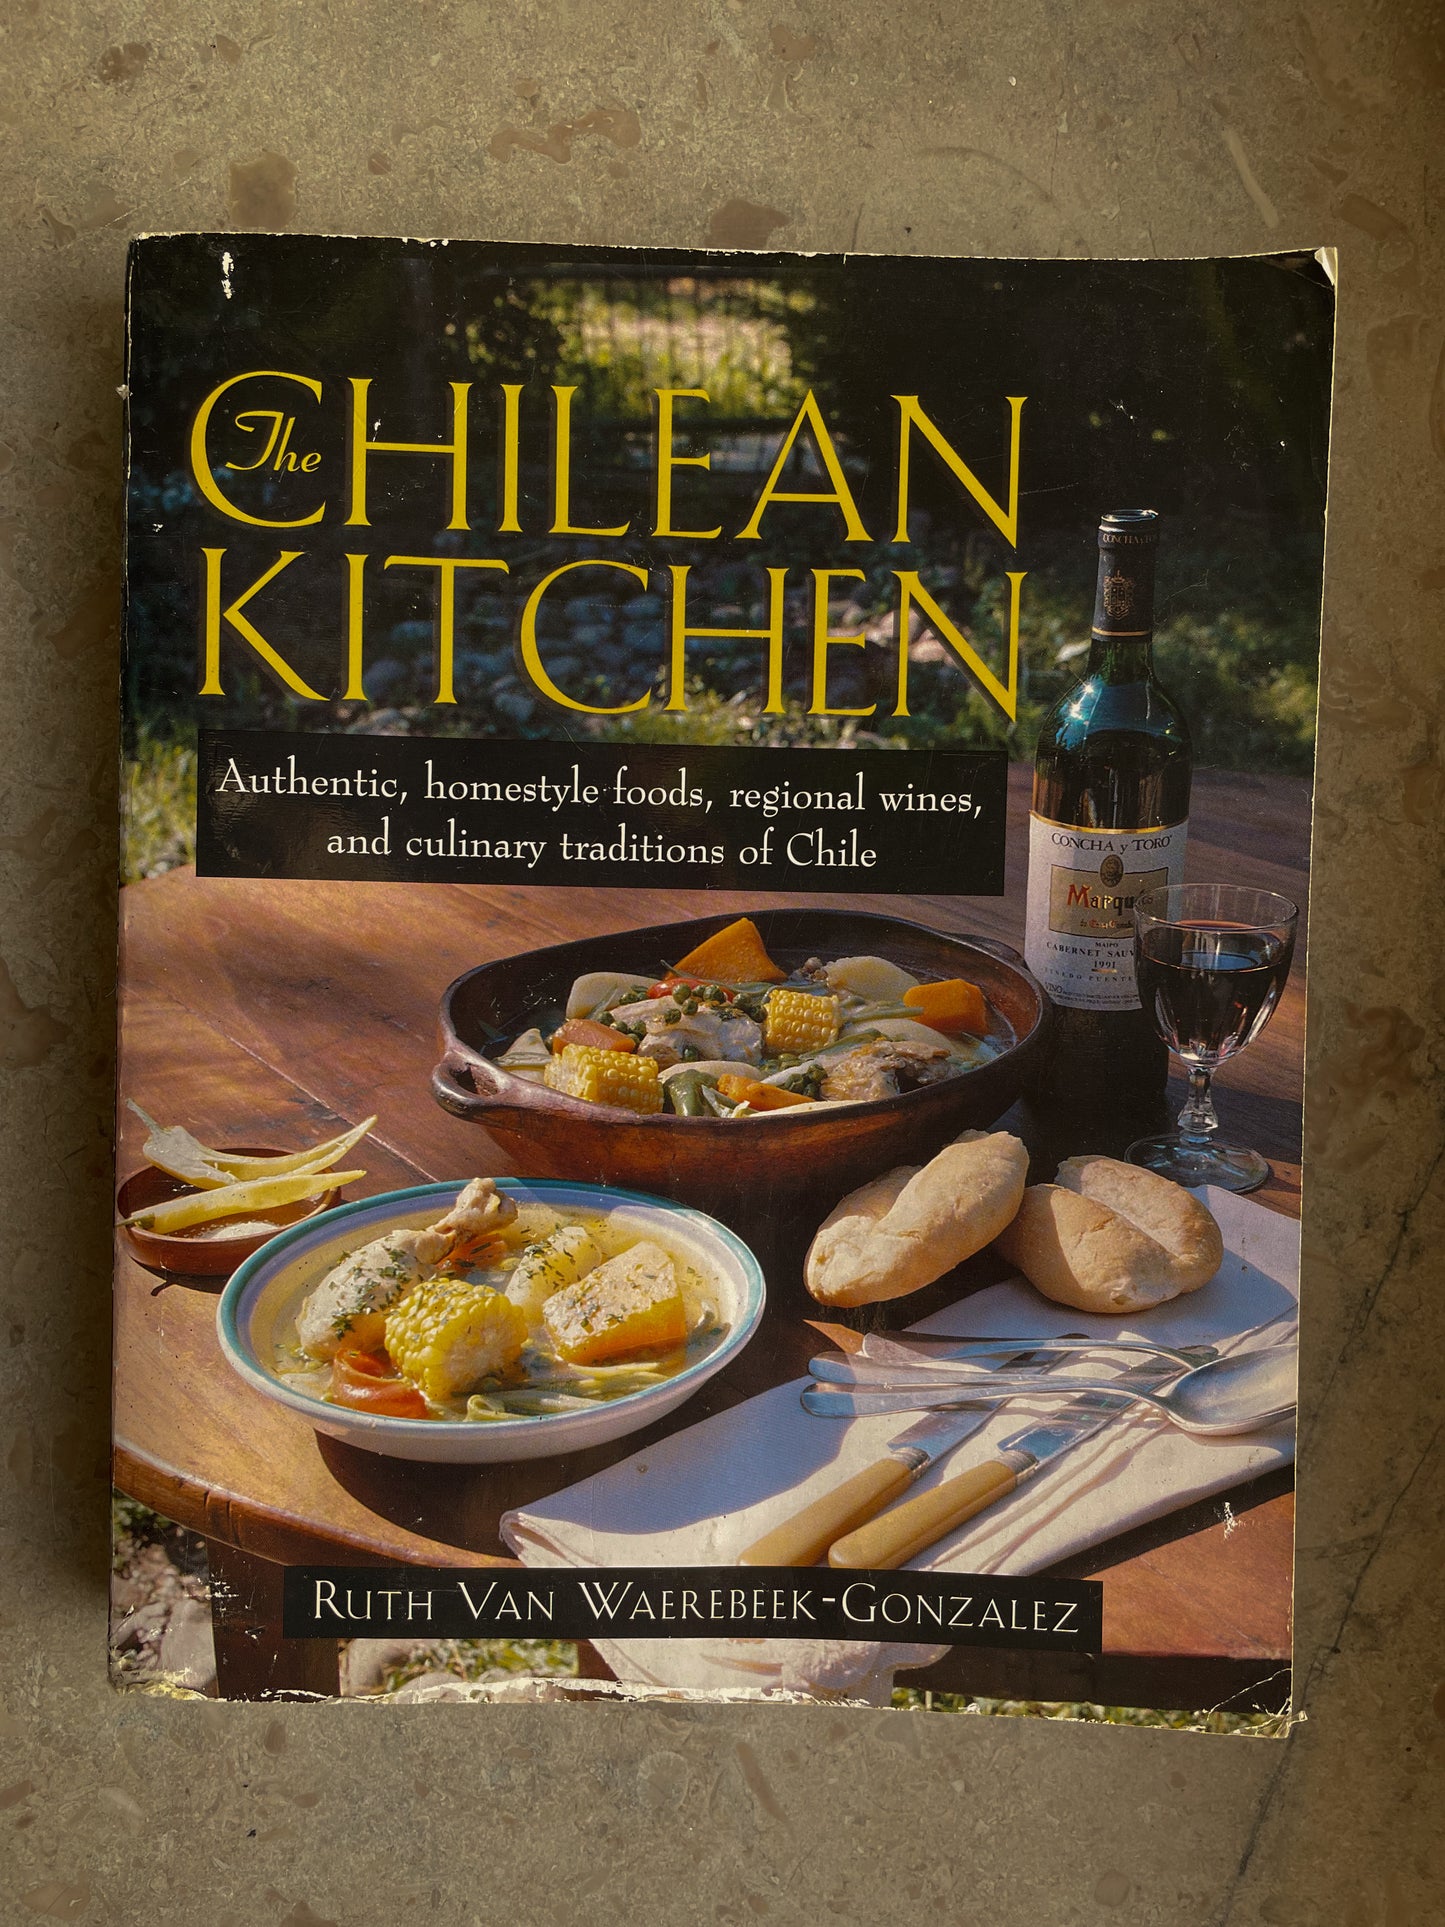 Vintage Cookbook “The Chilean Kitchen” 1999